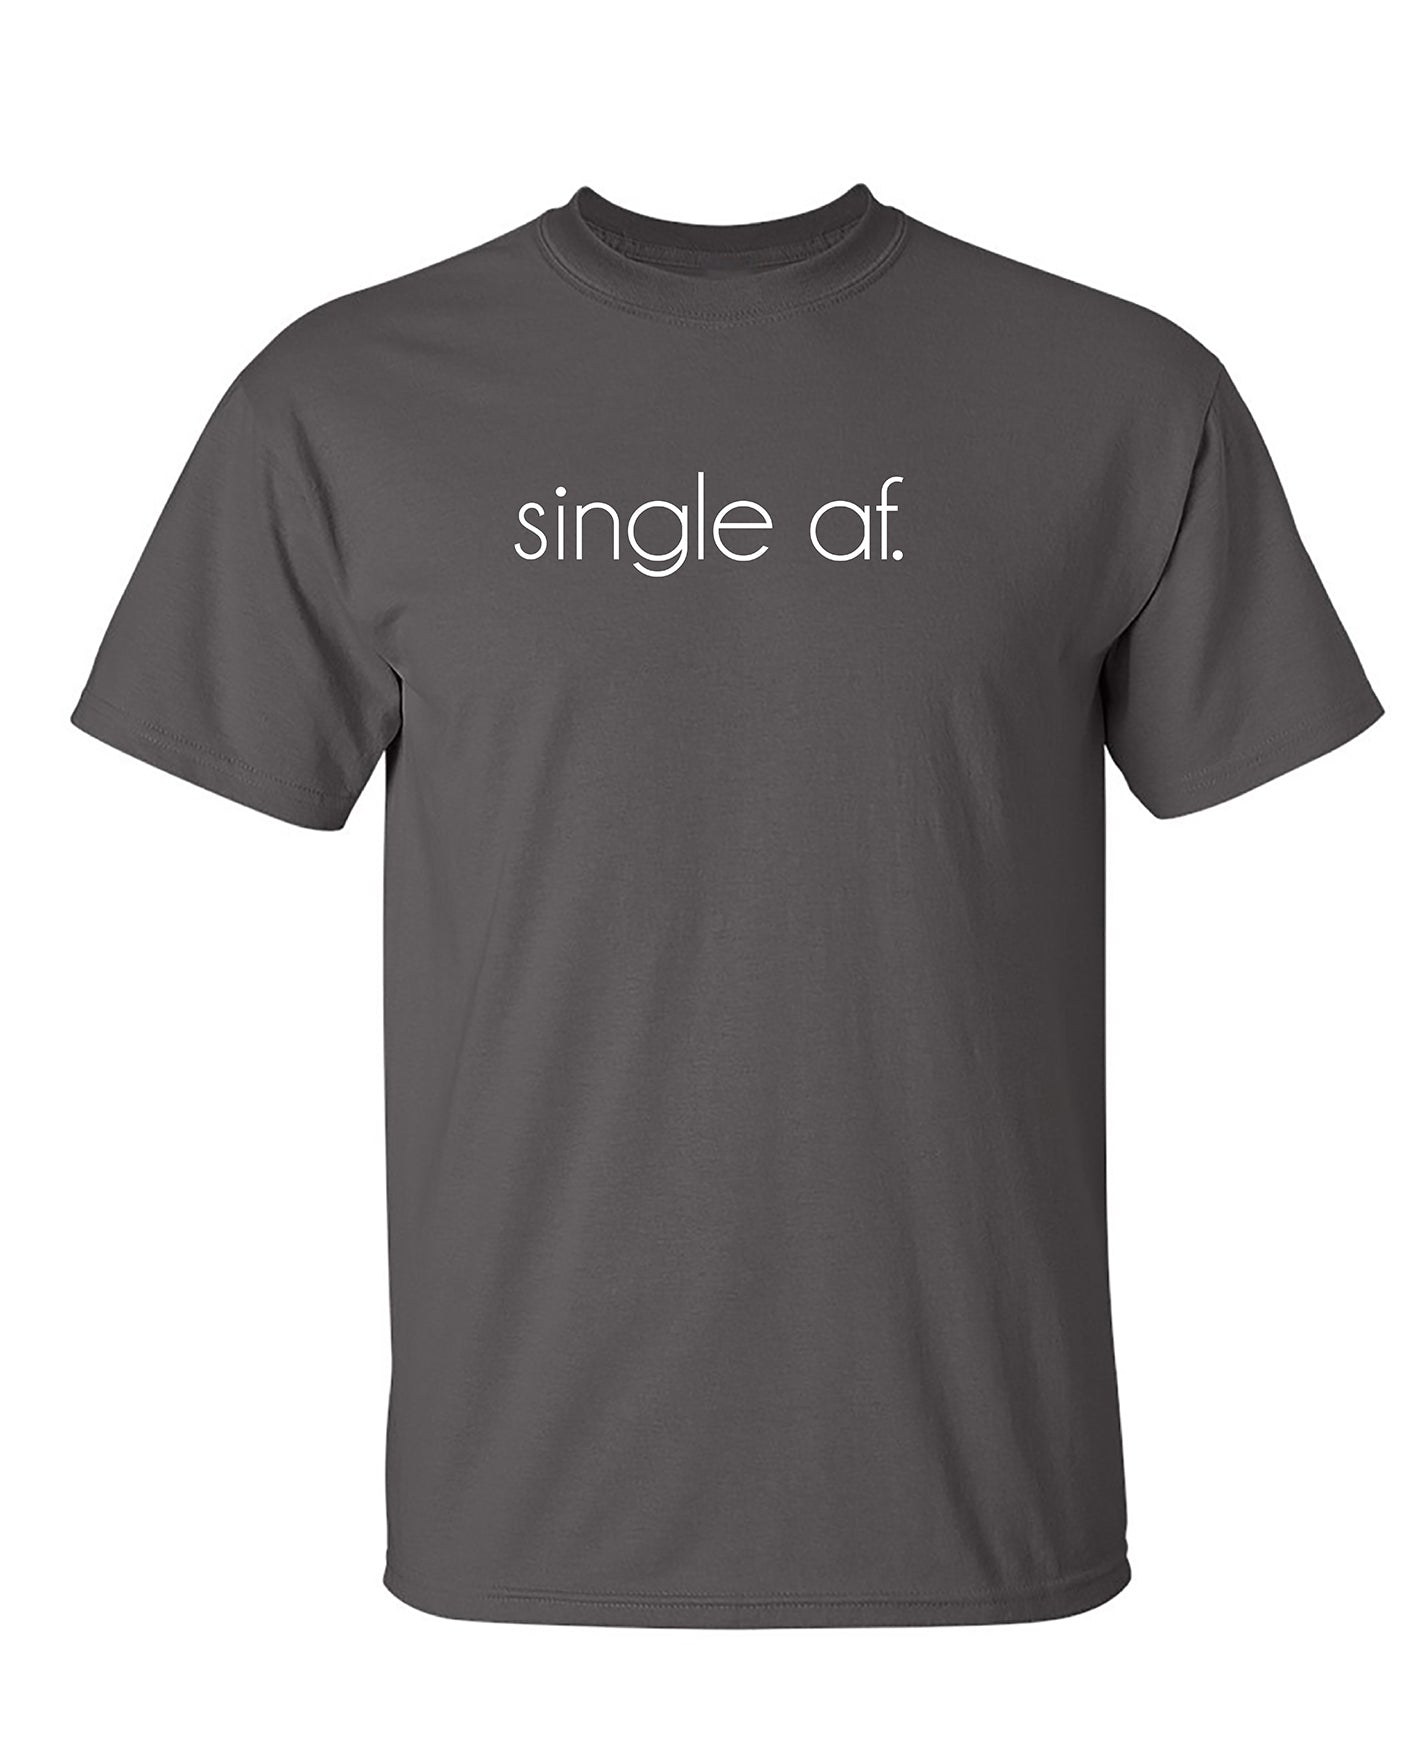 Funny T-Shirts design "SINGLE AF"